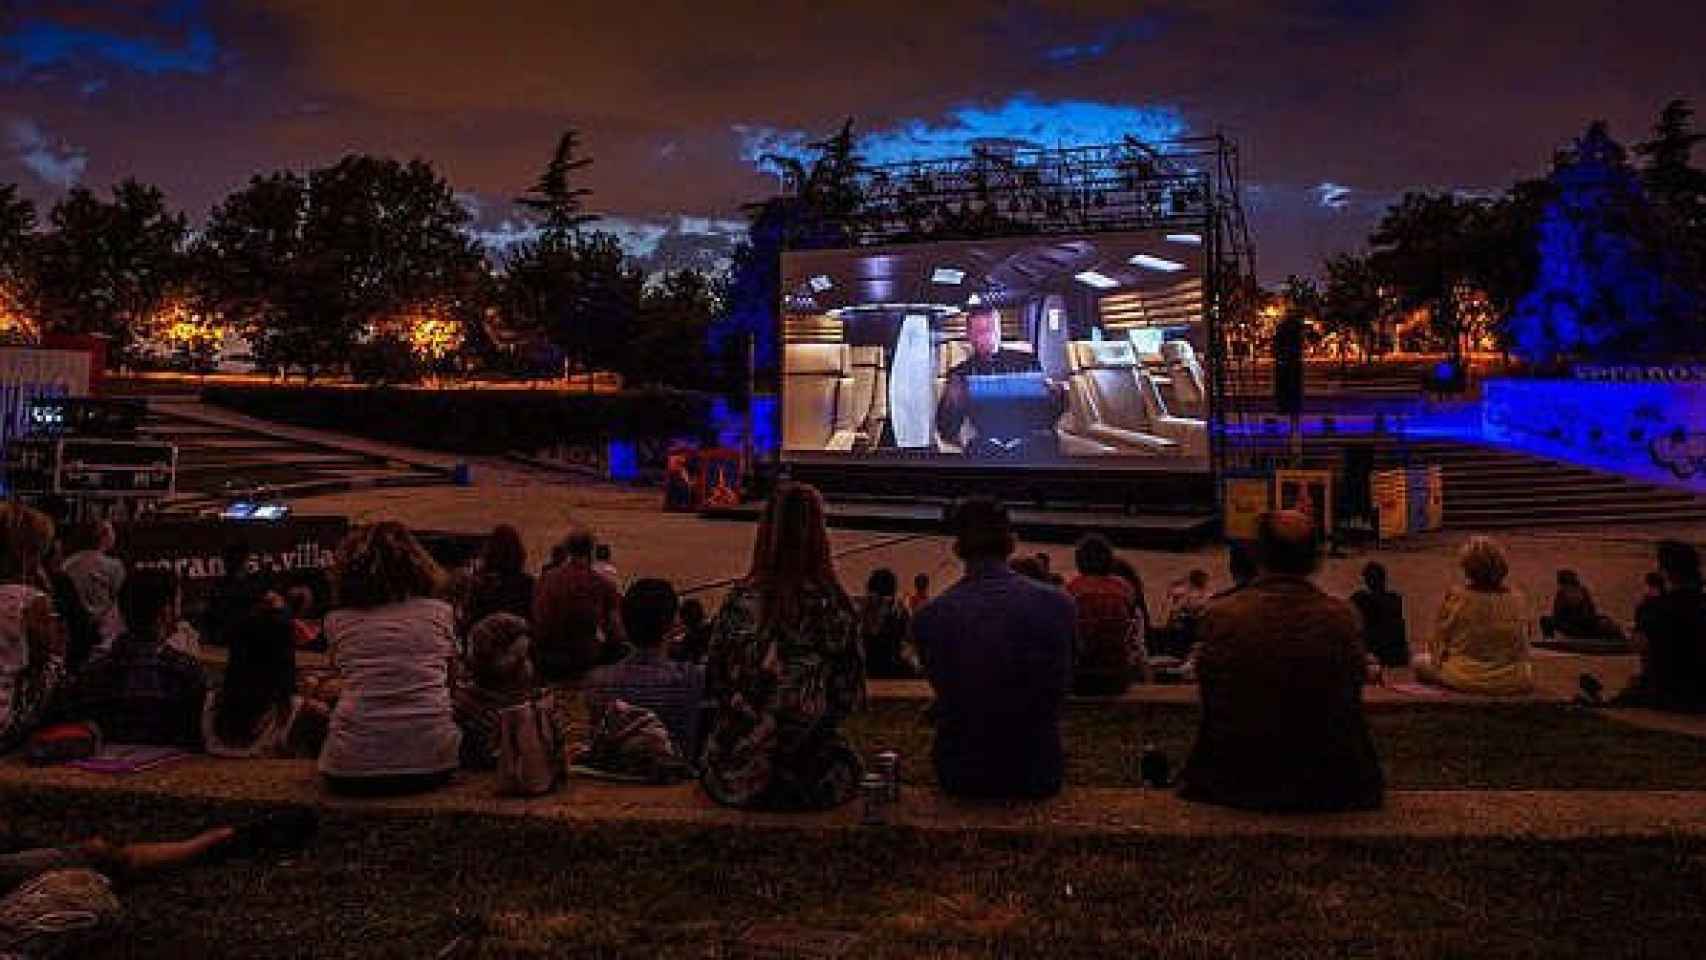 Cine de verano de Arganzuela en el Auditorio del Parque Tierno Galván.